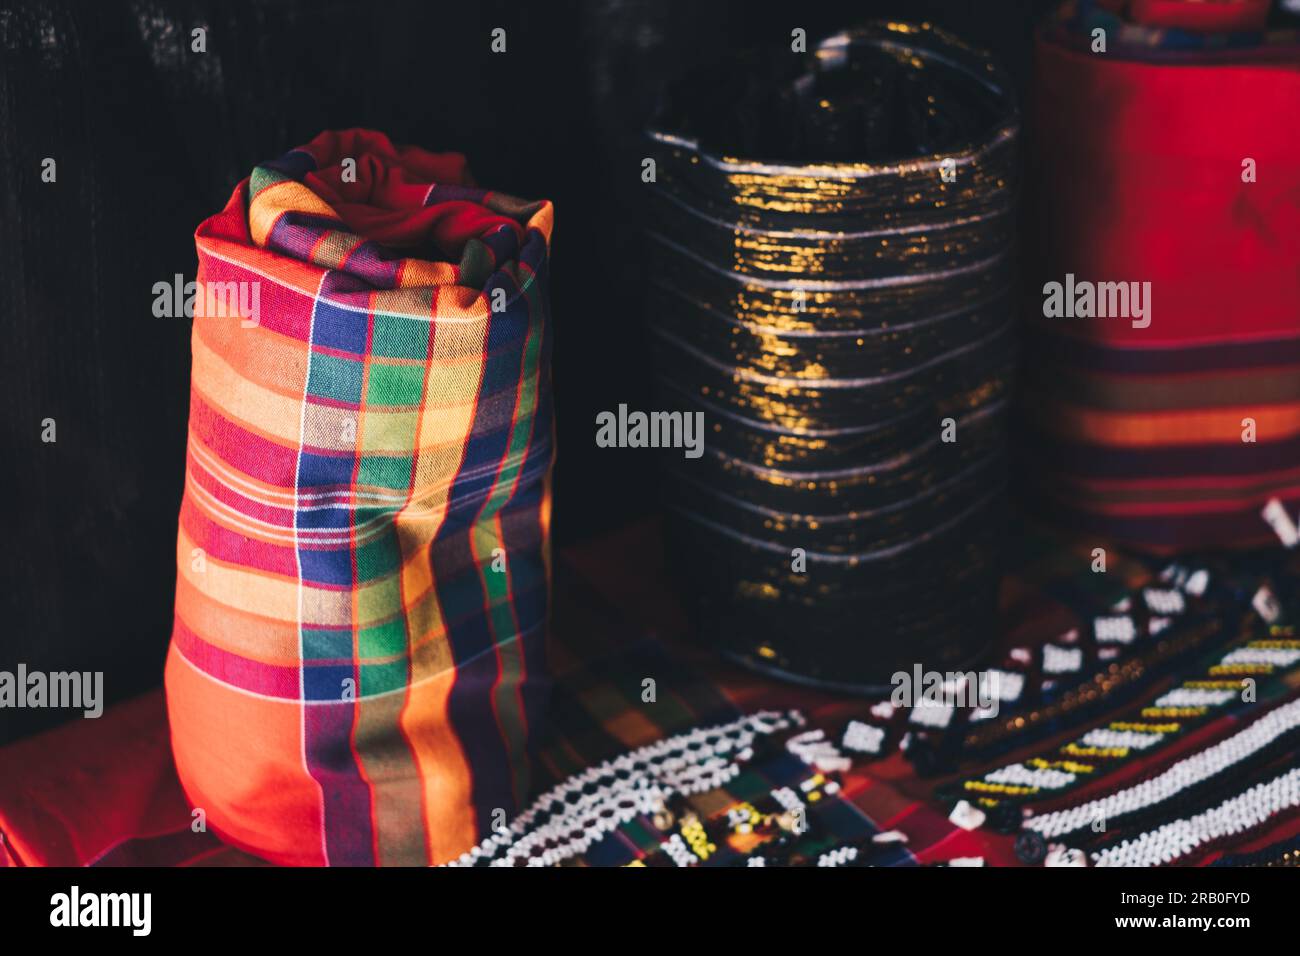 Rouleau droit de T'boli Malong 'jupe tube' tissée à la main dans des couleurs traditionnelles et la conception en plaid rouge qui peut être porté comme robe, jupe, cape, etc Banque D'Images